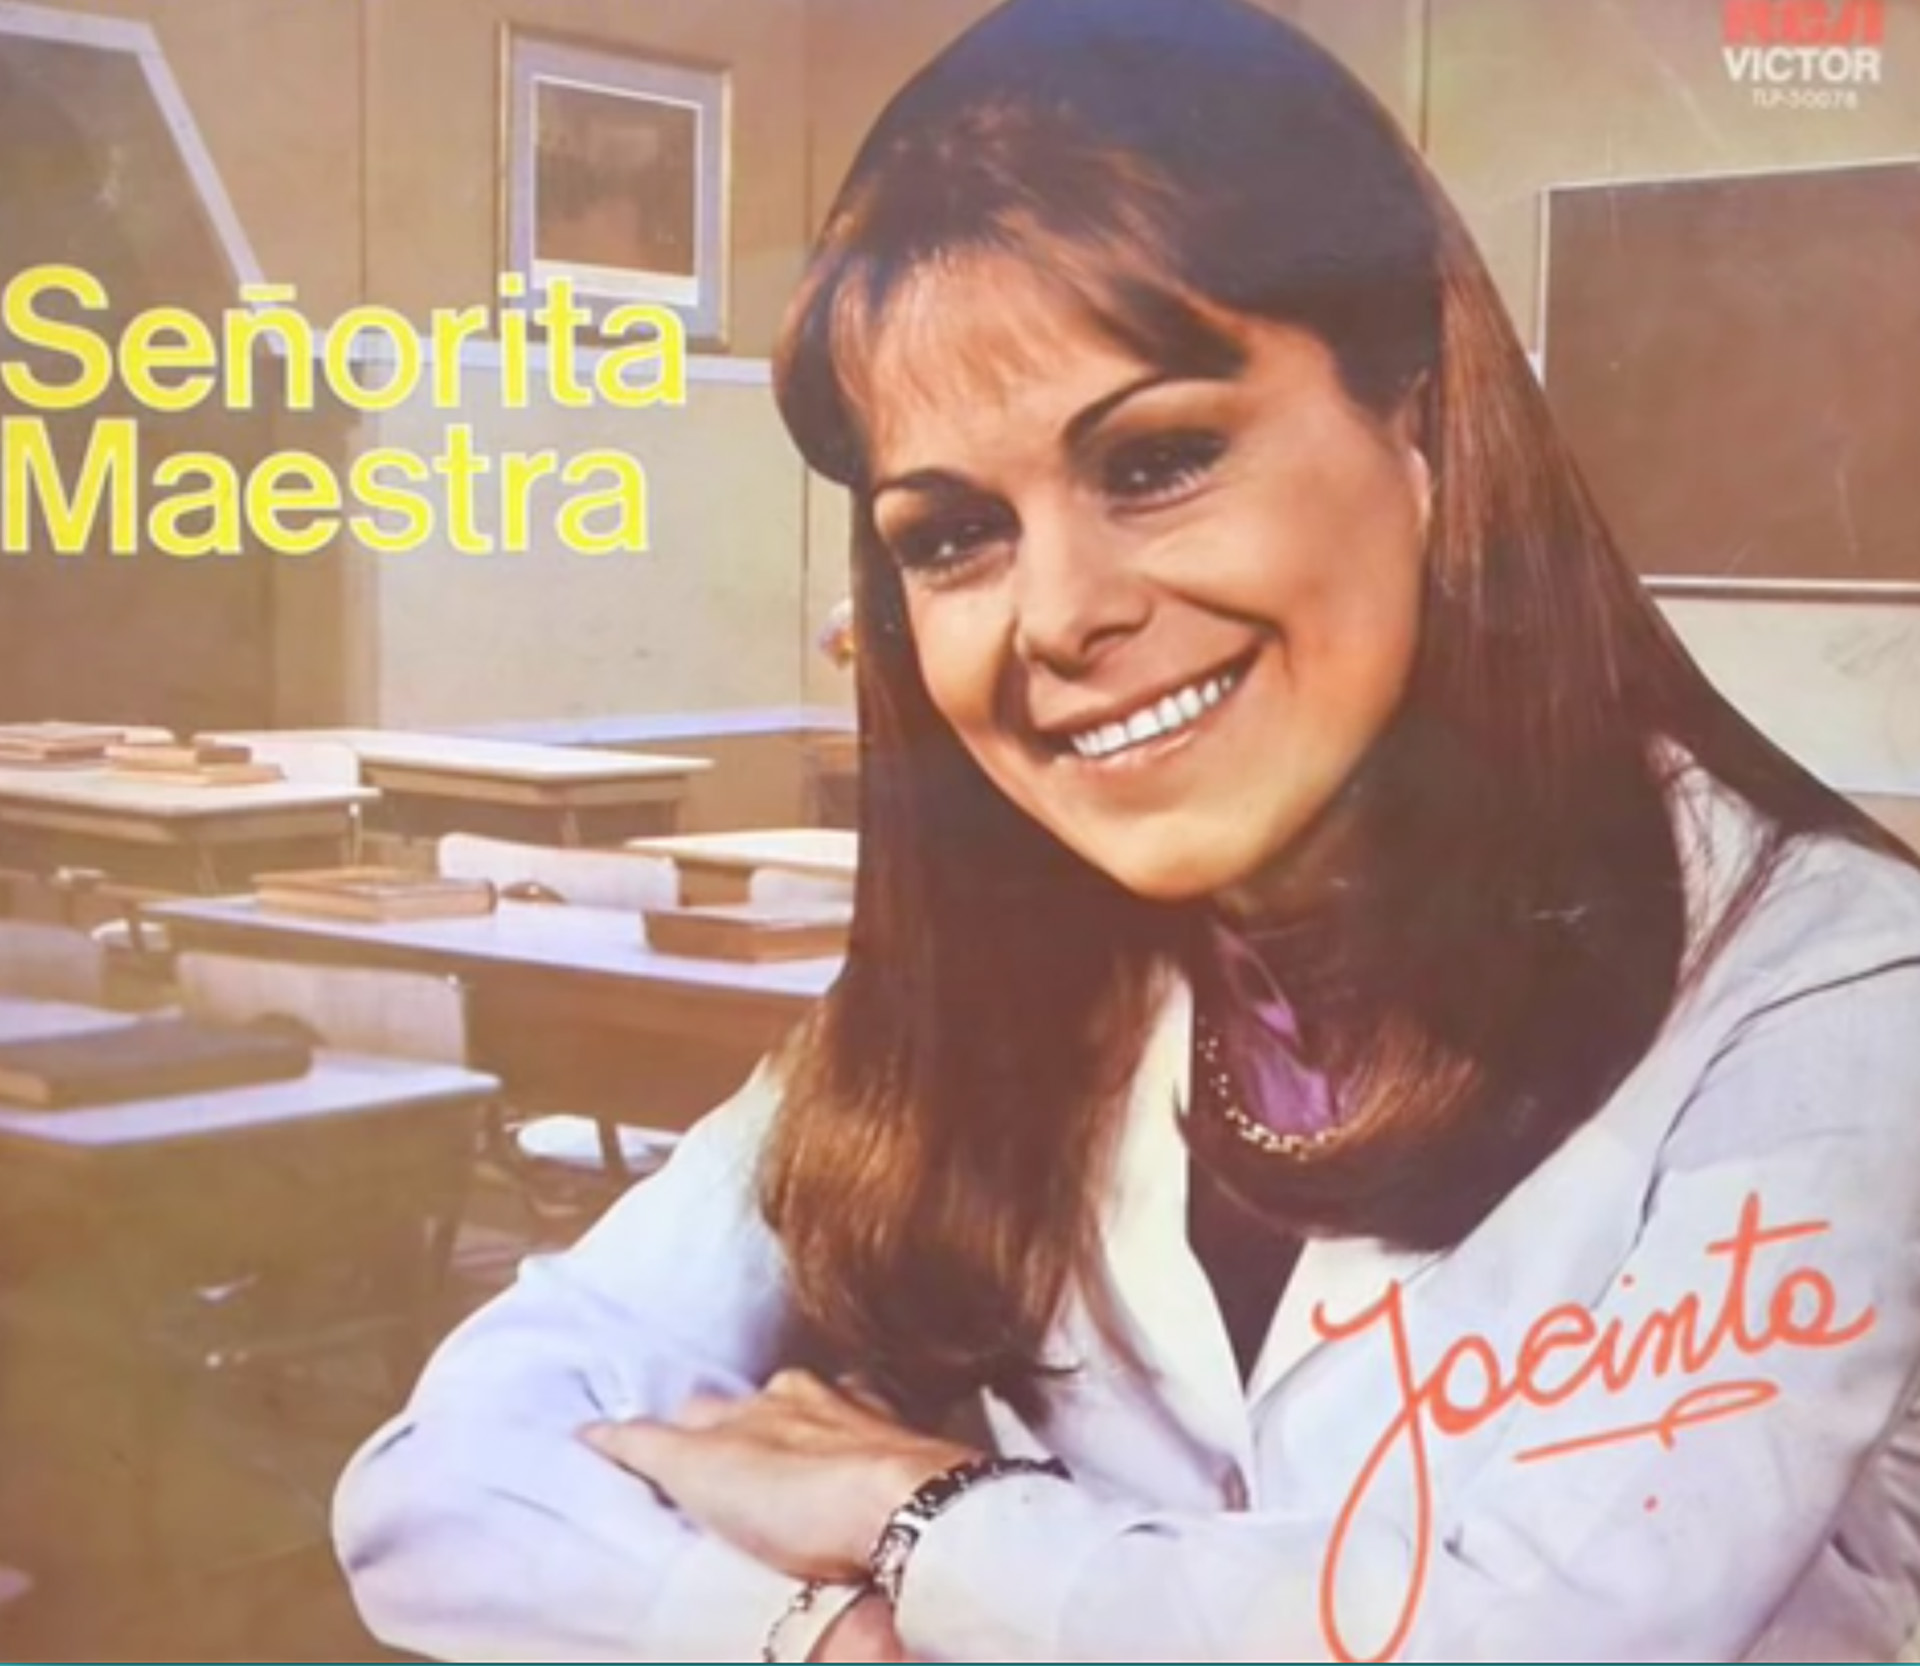 Cristina Lemercier, en la portada del disco el programa Señorita Maestra